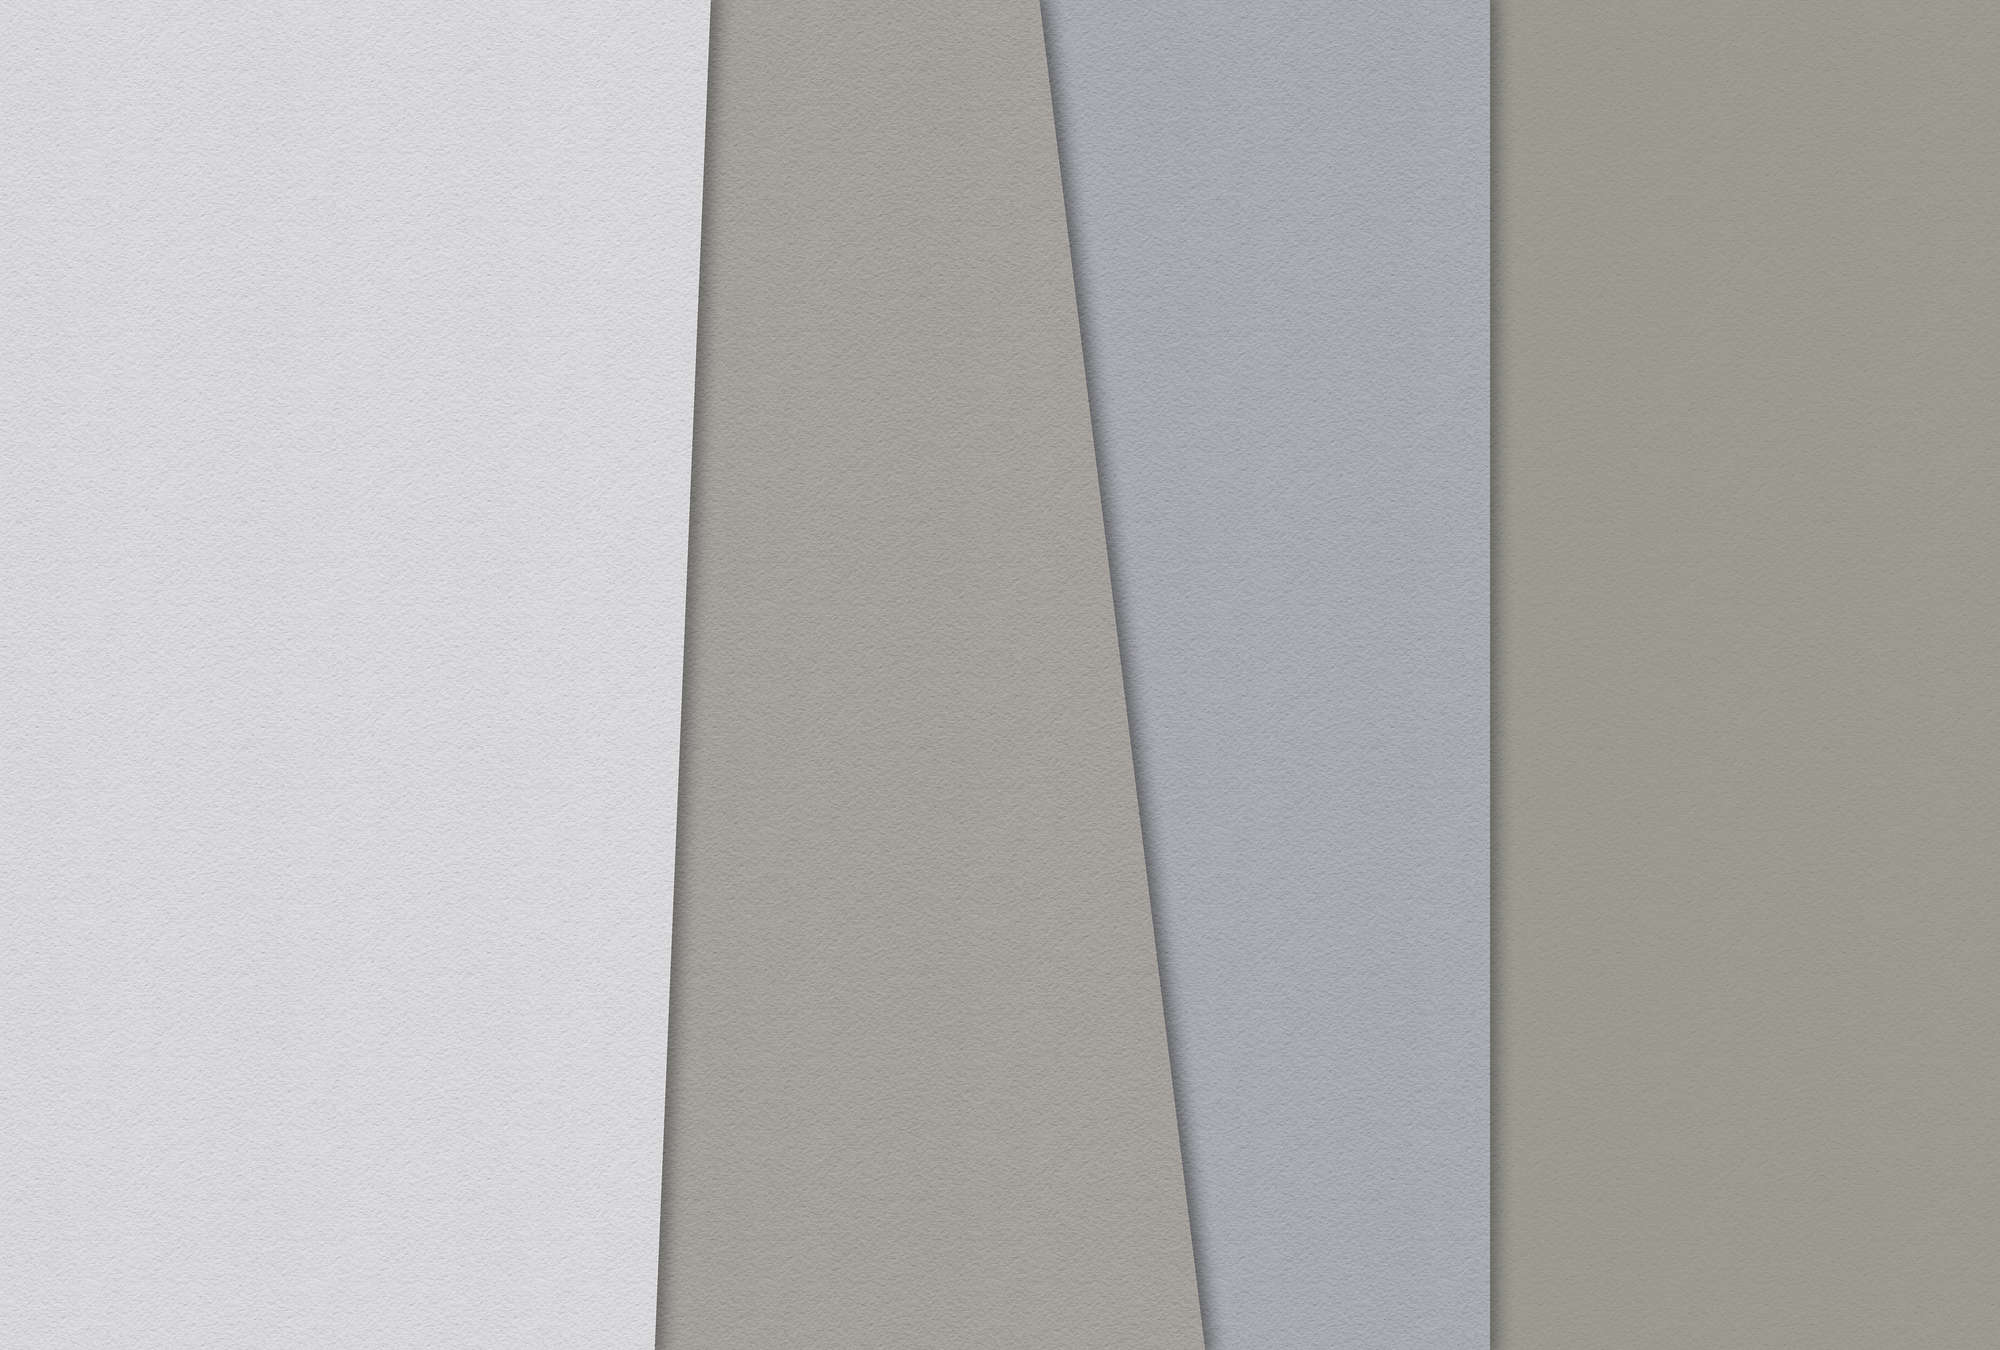             Layered paper 4 - papier peint aplats de couleurs minimalisme structure papier à la cuve - bleu, crème | nacre intissé lisse
        